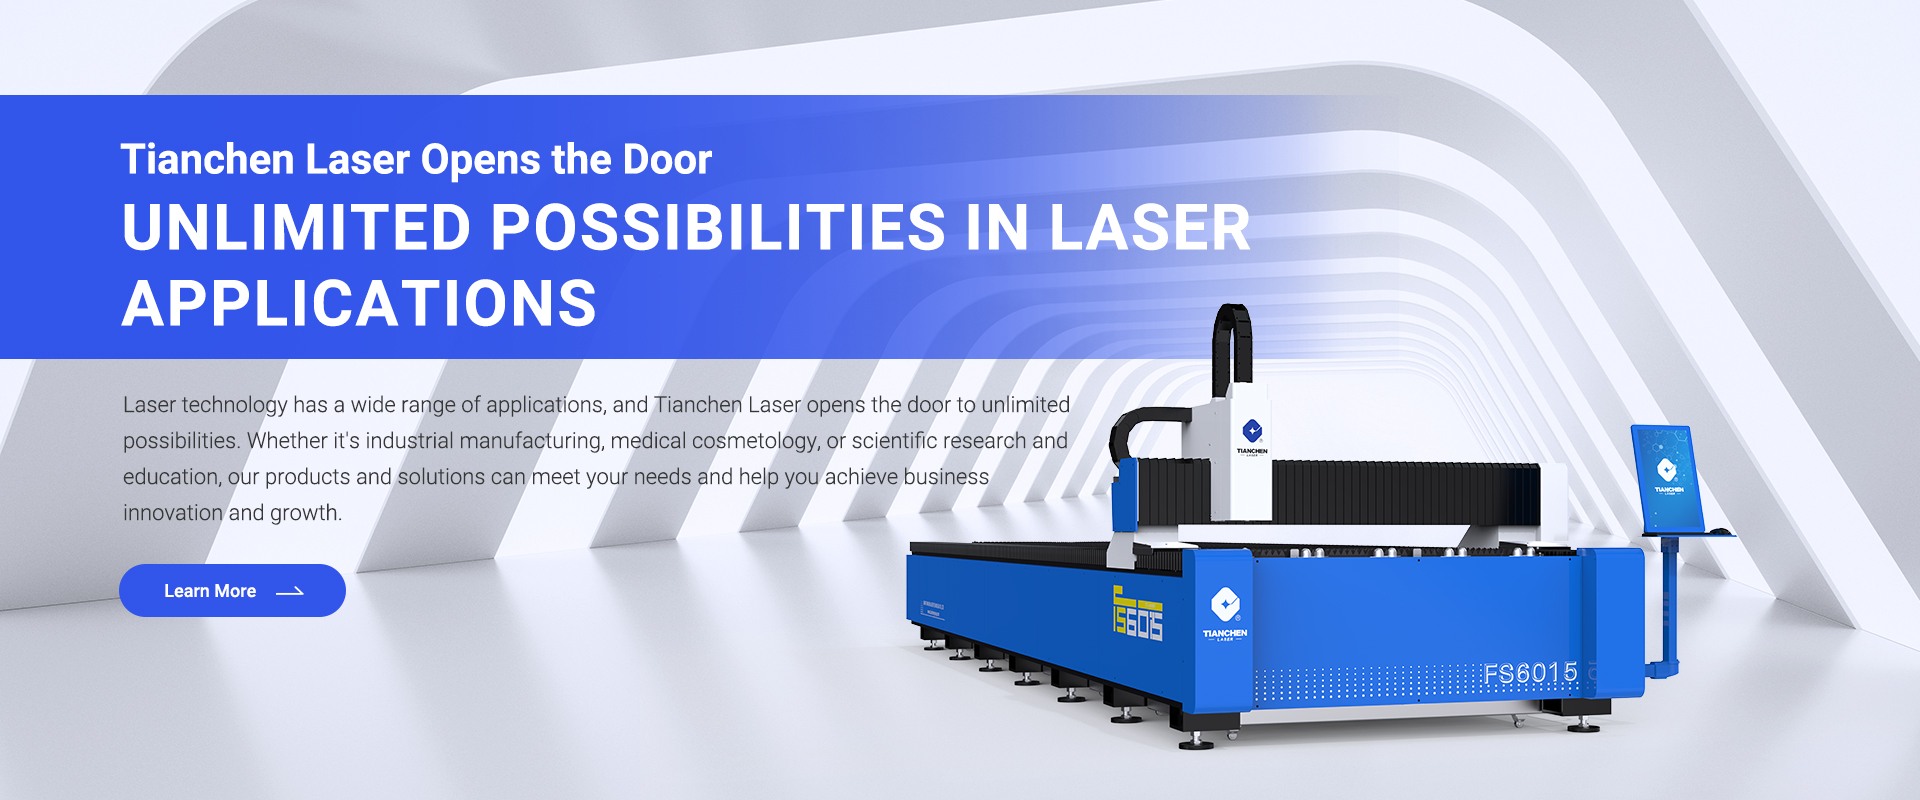 3000W Fiber Laser Cutting Machine